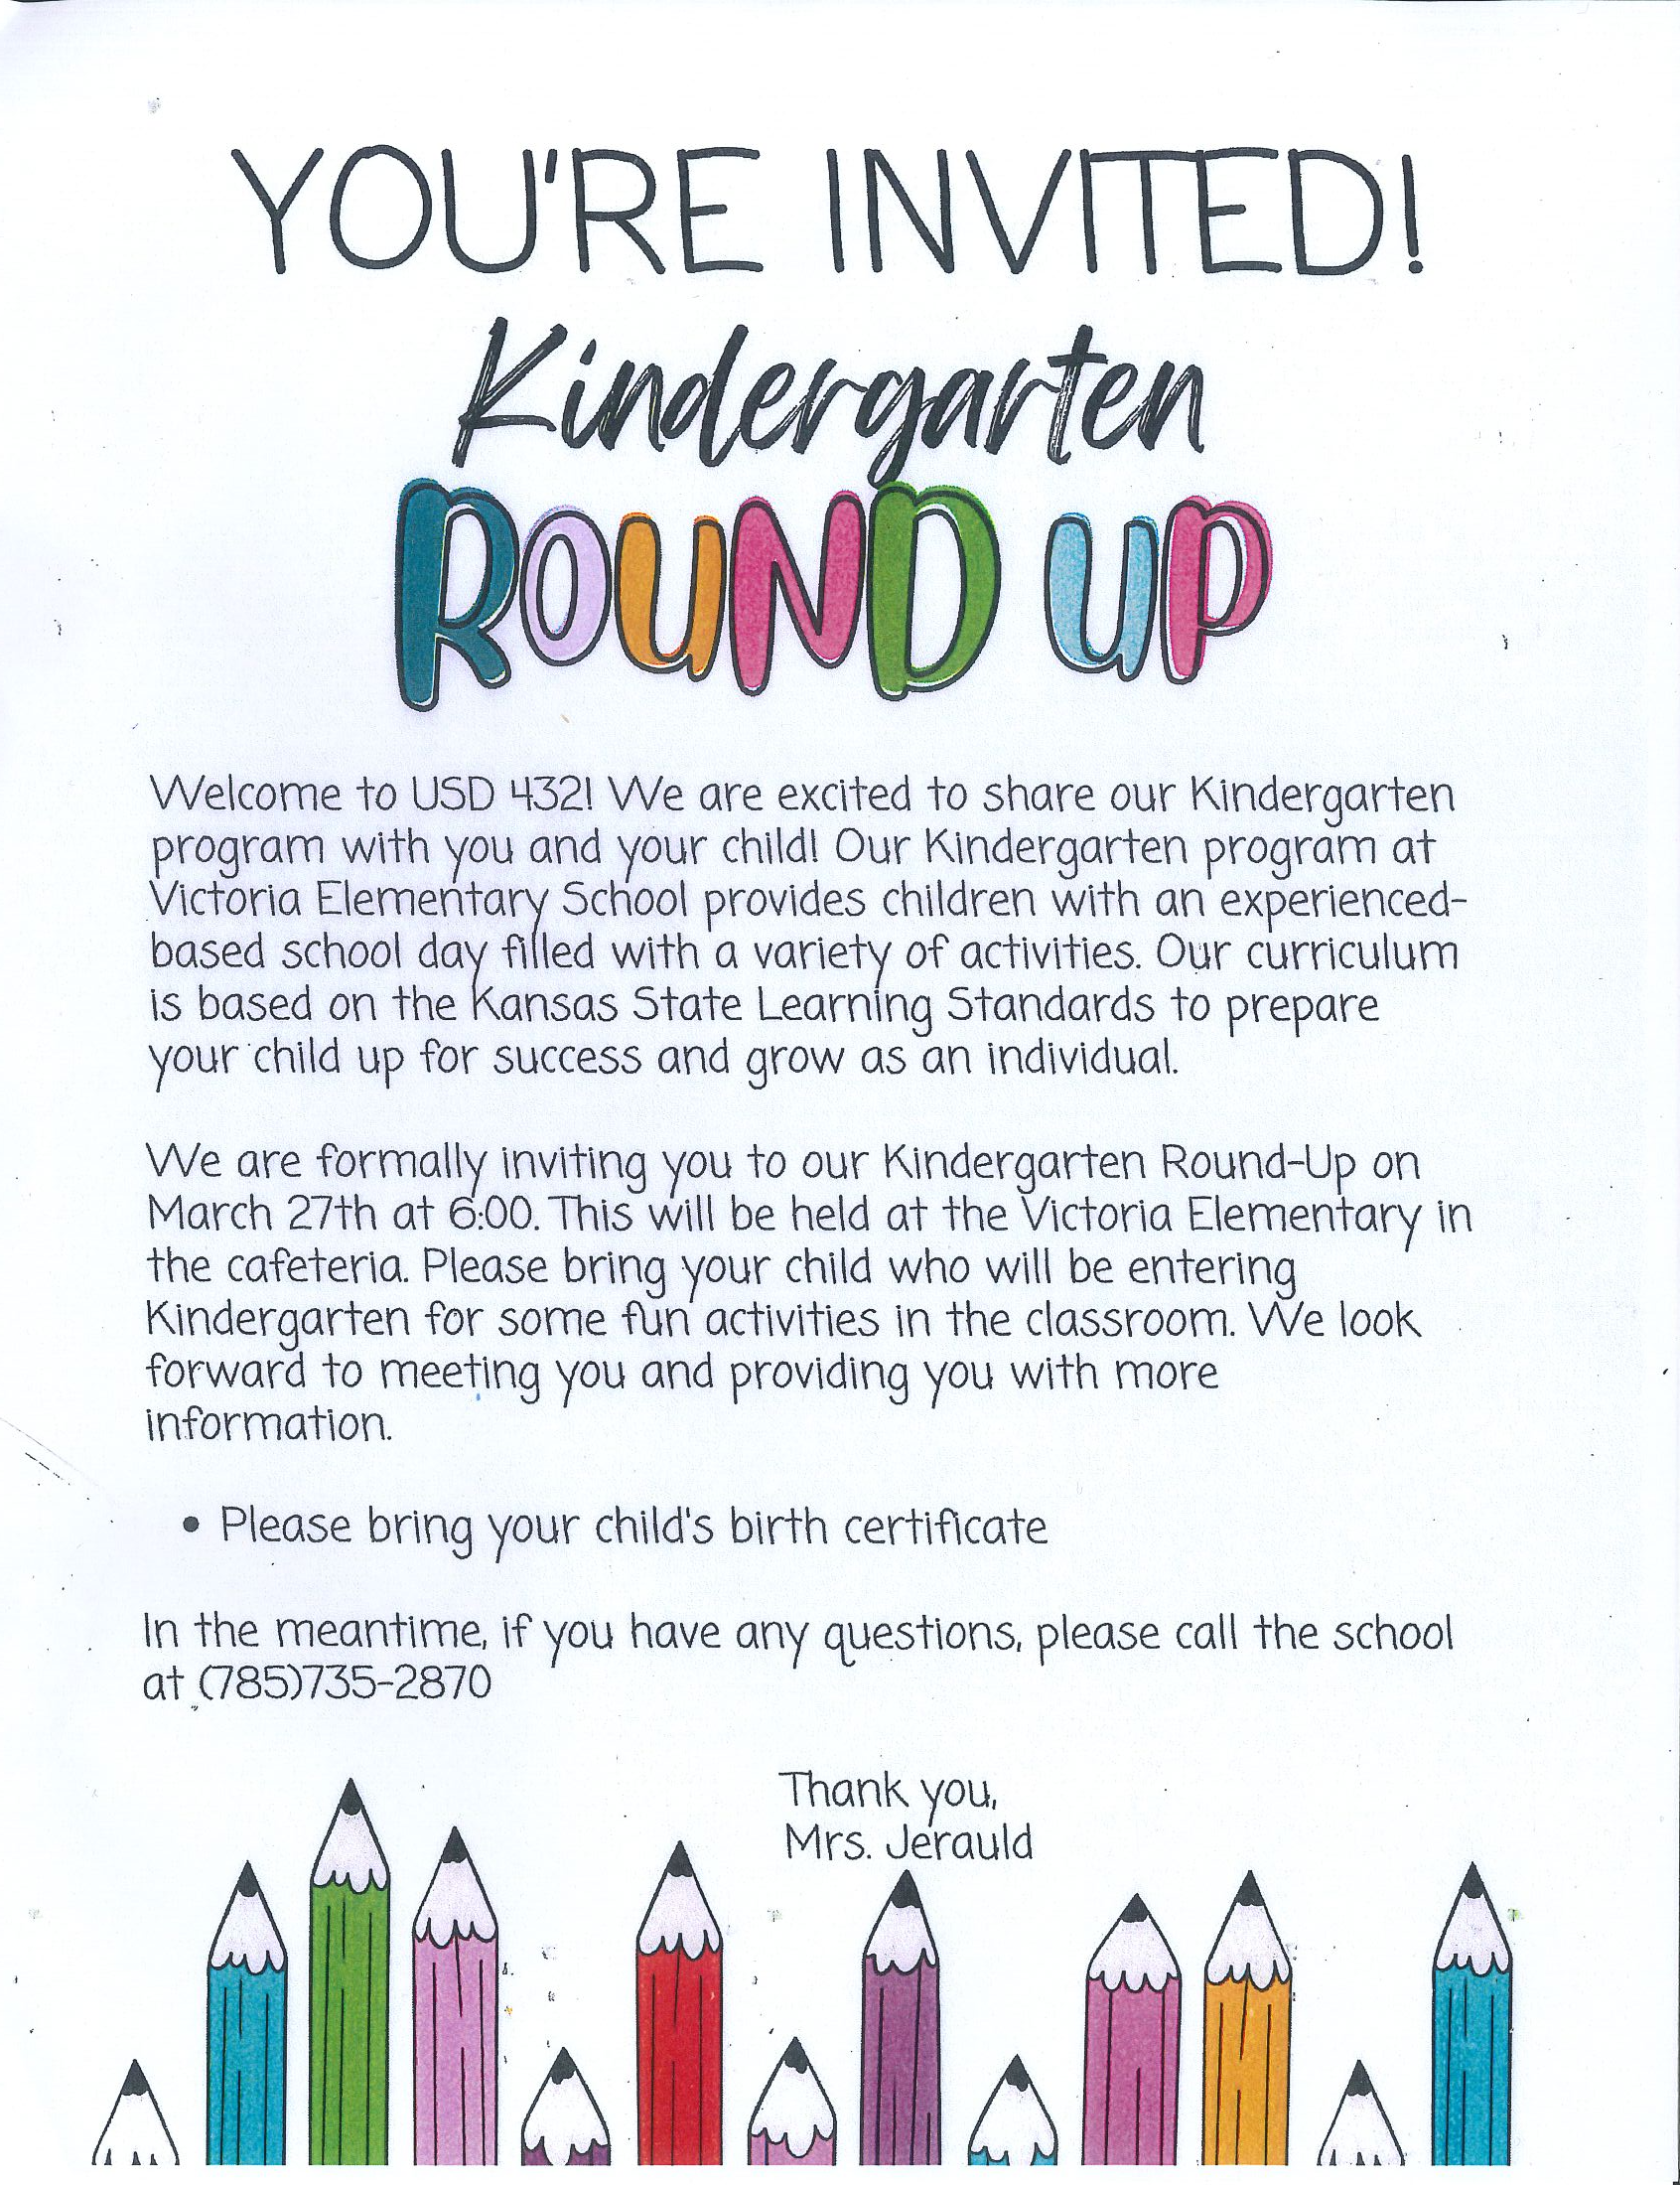 Victoria Elementary Roundup